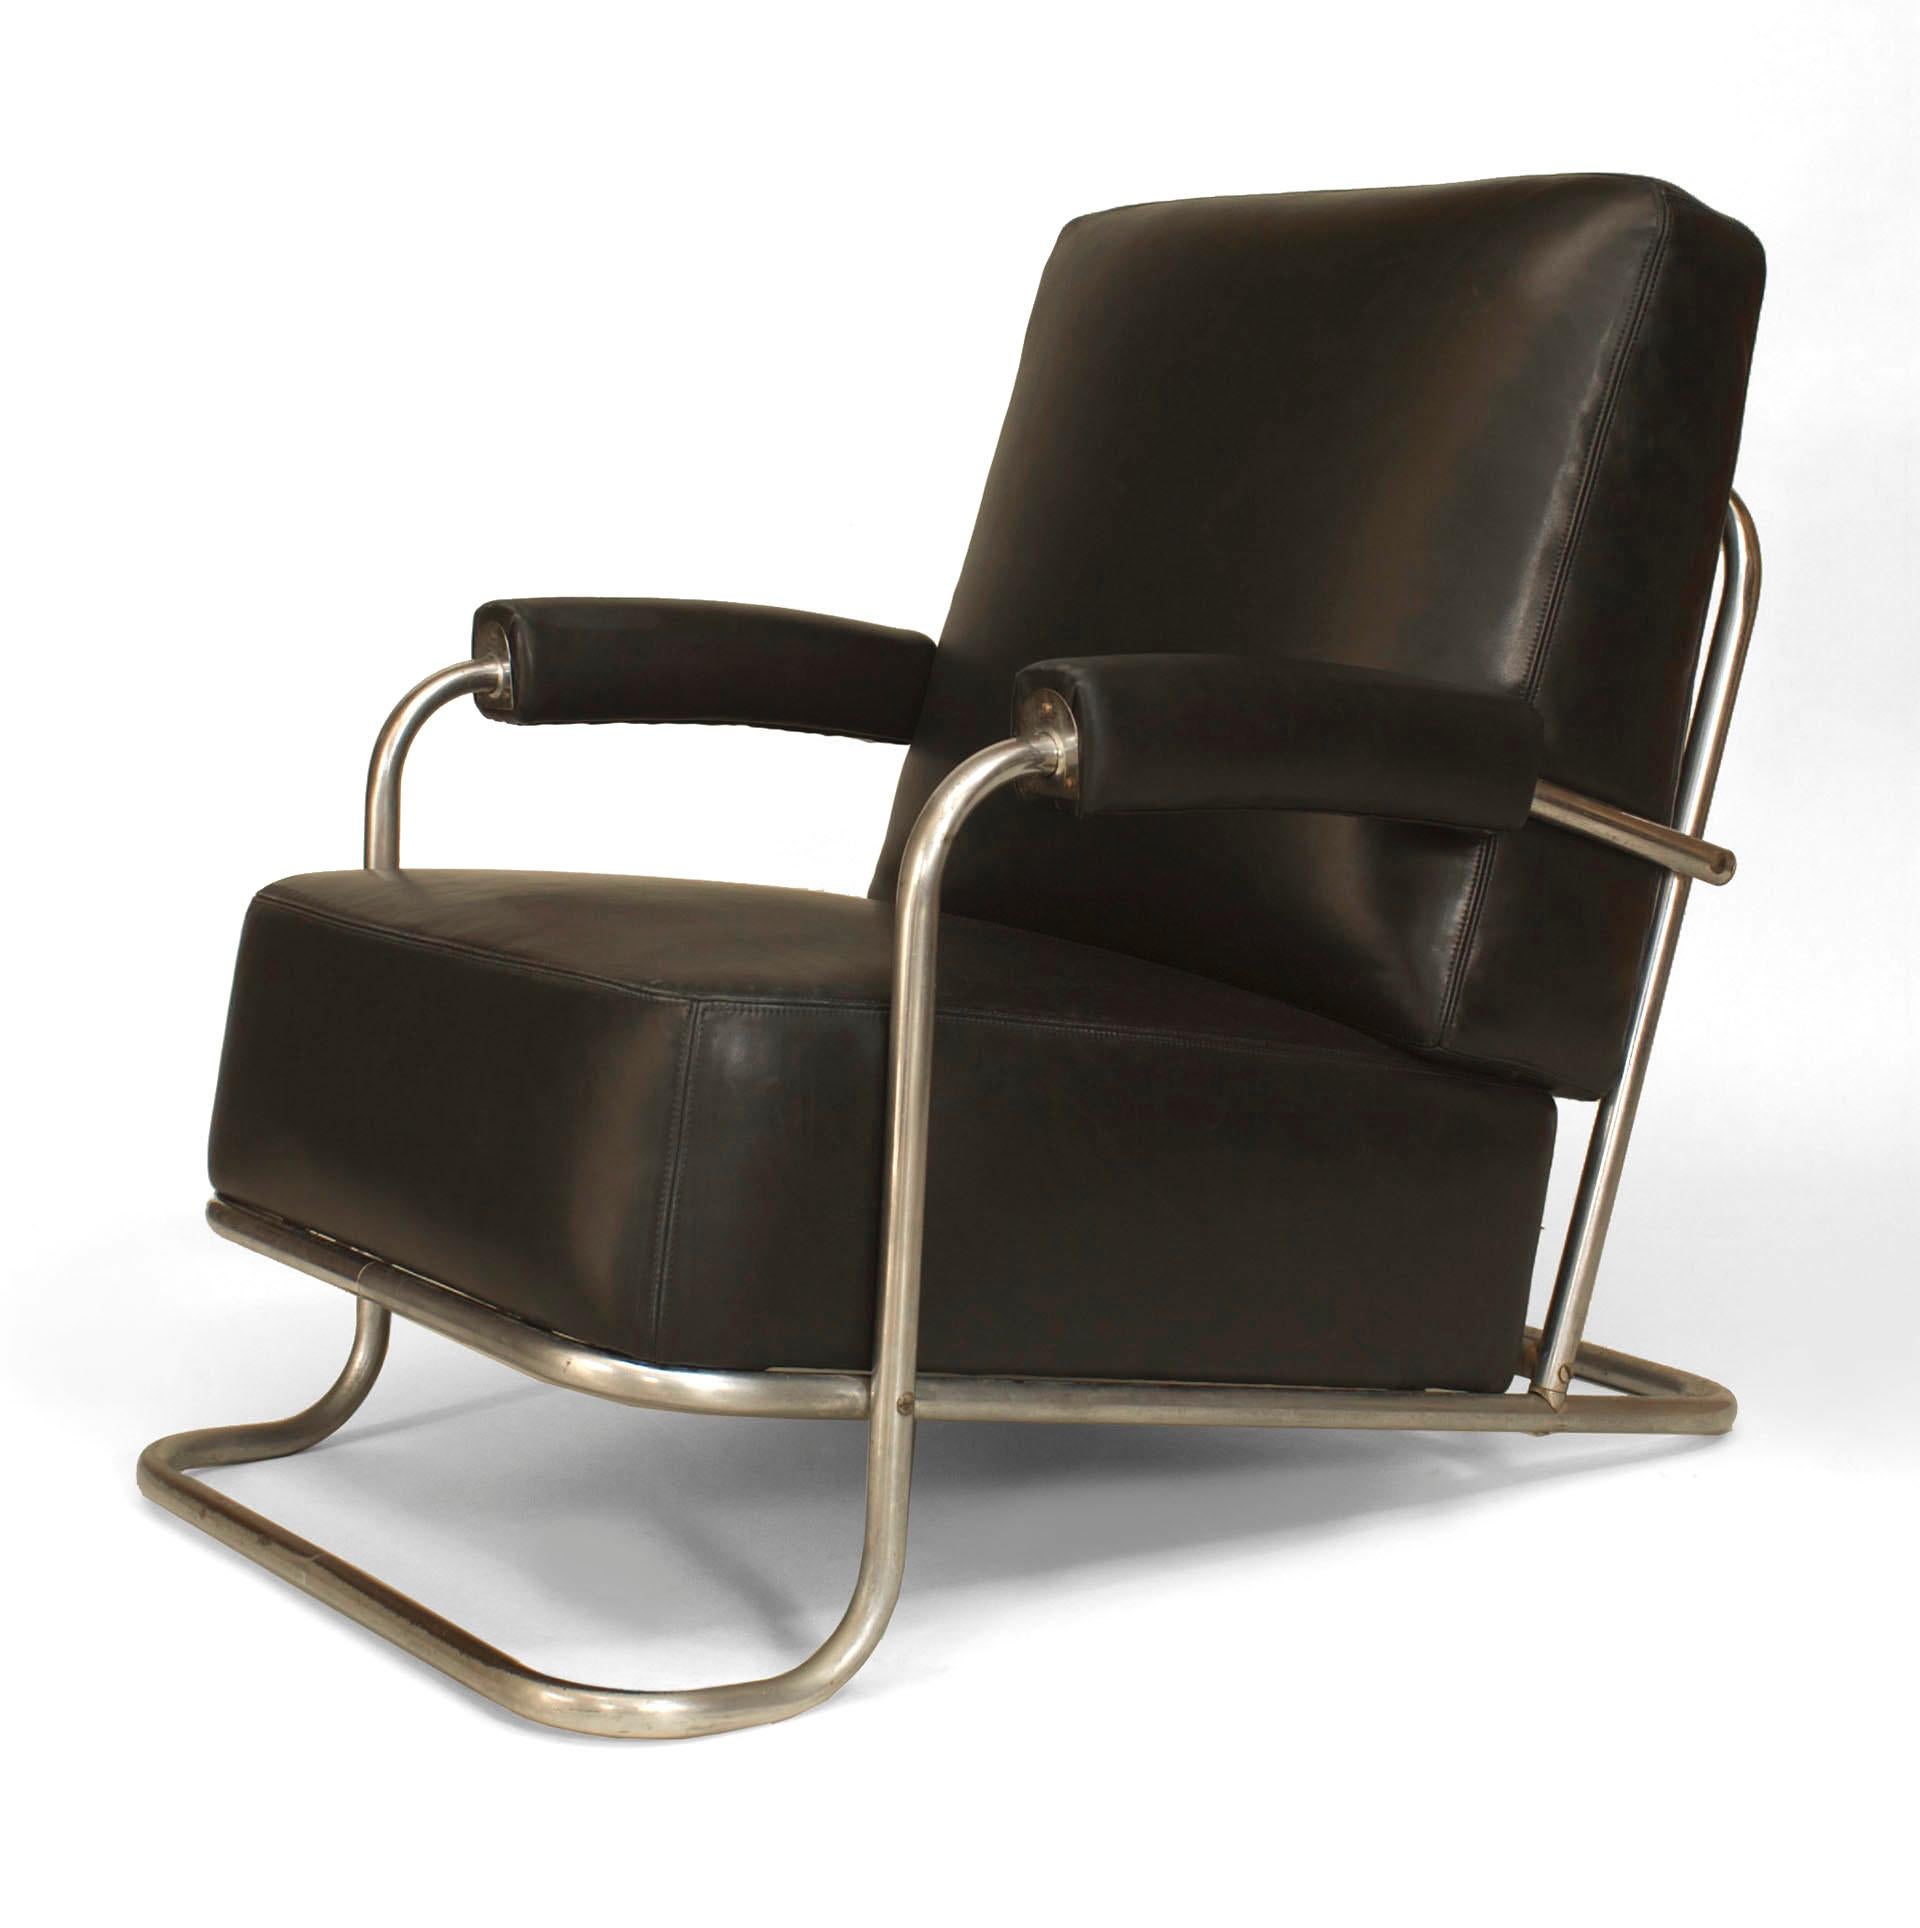 Fauteuil Art Déco français tubulaire chromé avec assise et dossier recouverts de cuir noir (créé par R.C. COQUERY pour THONET, chaise longue modèle #B 256, 1929).
